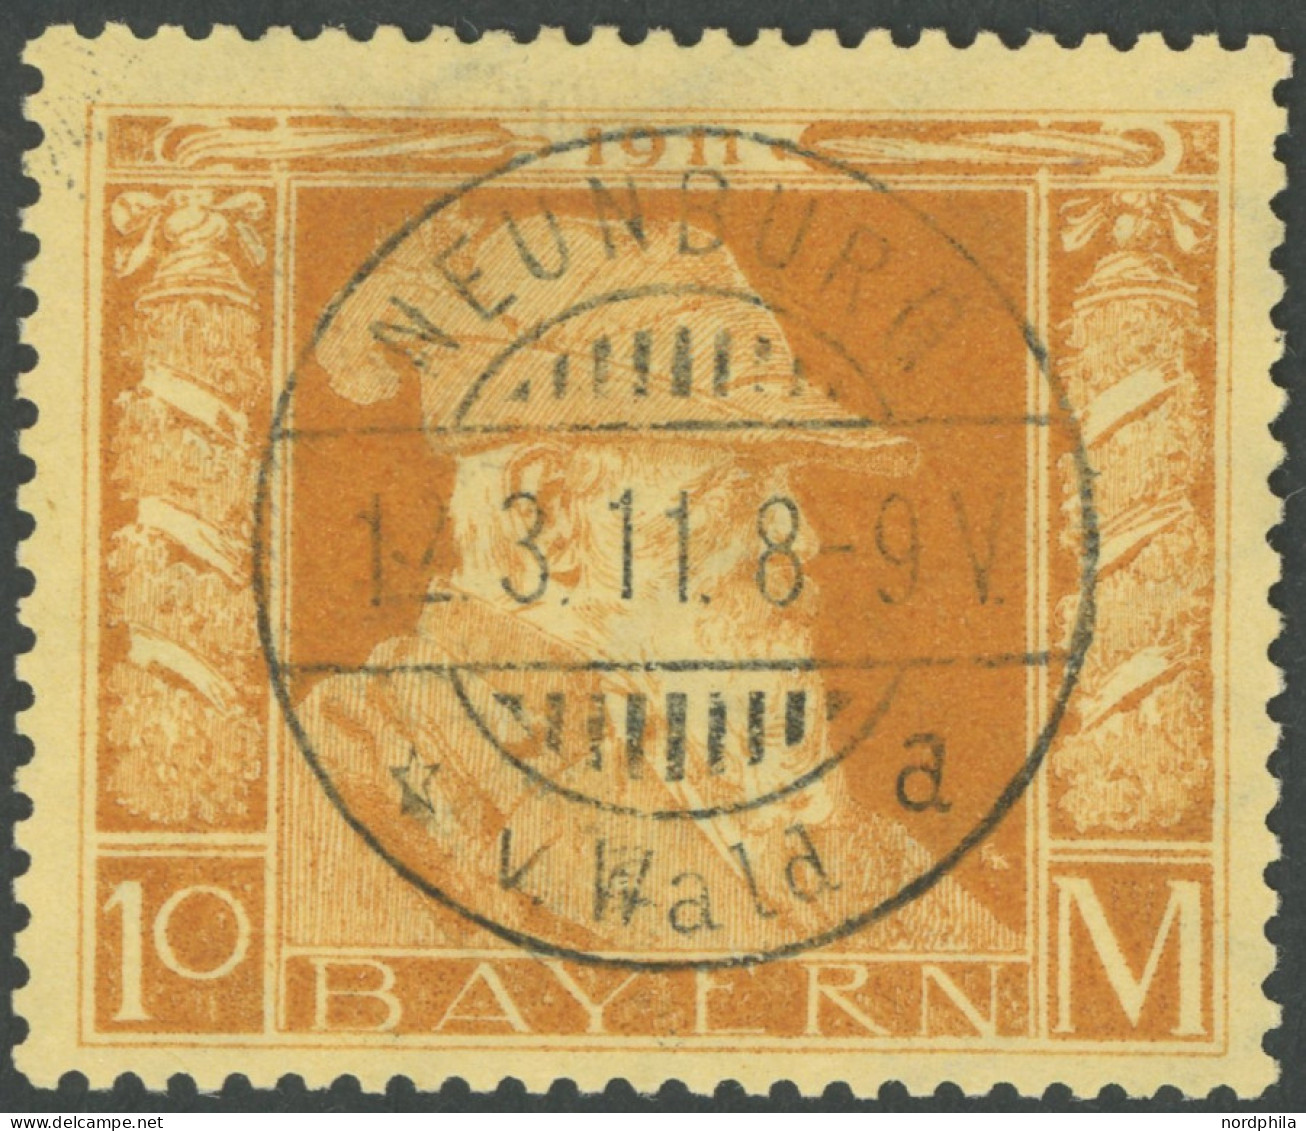 BAYERN 90II O, 1911, 10 M. Luitpold, Type II, Idealer Stempel NEUENBURG V. WALD, Pracht, Mi. 400.- - Gebraucht